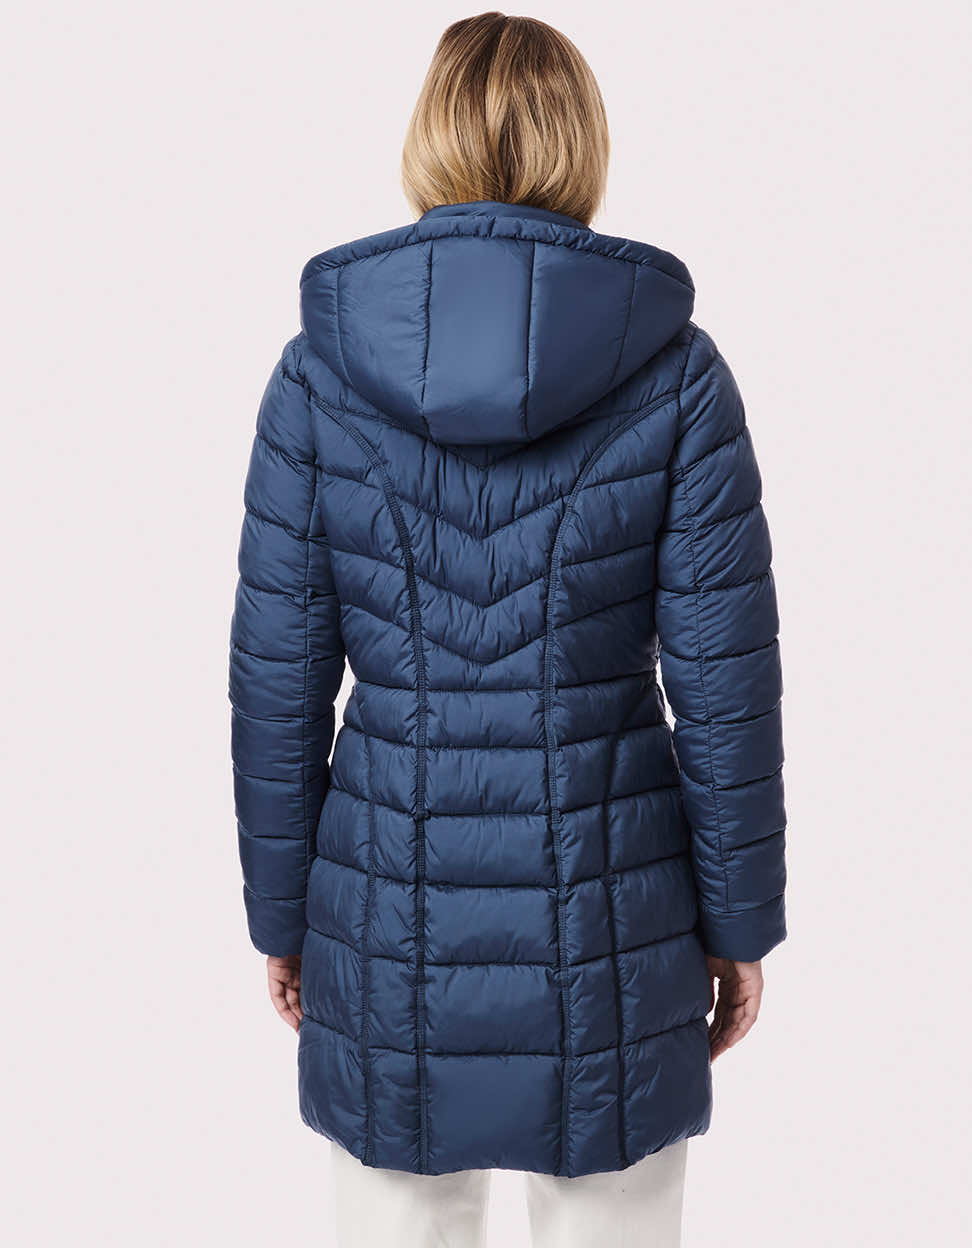 Fashion Coat for Women - 3-in-1 Puffer Coat - Smoke Blue - Bernardo